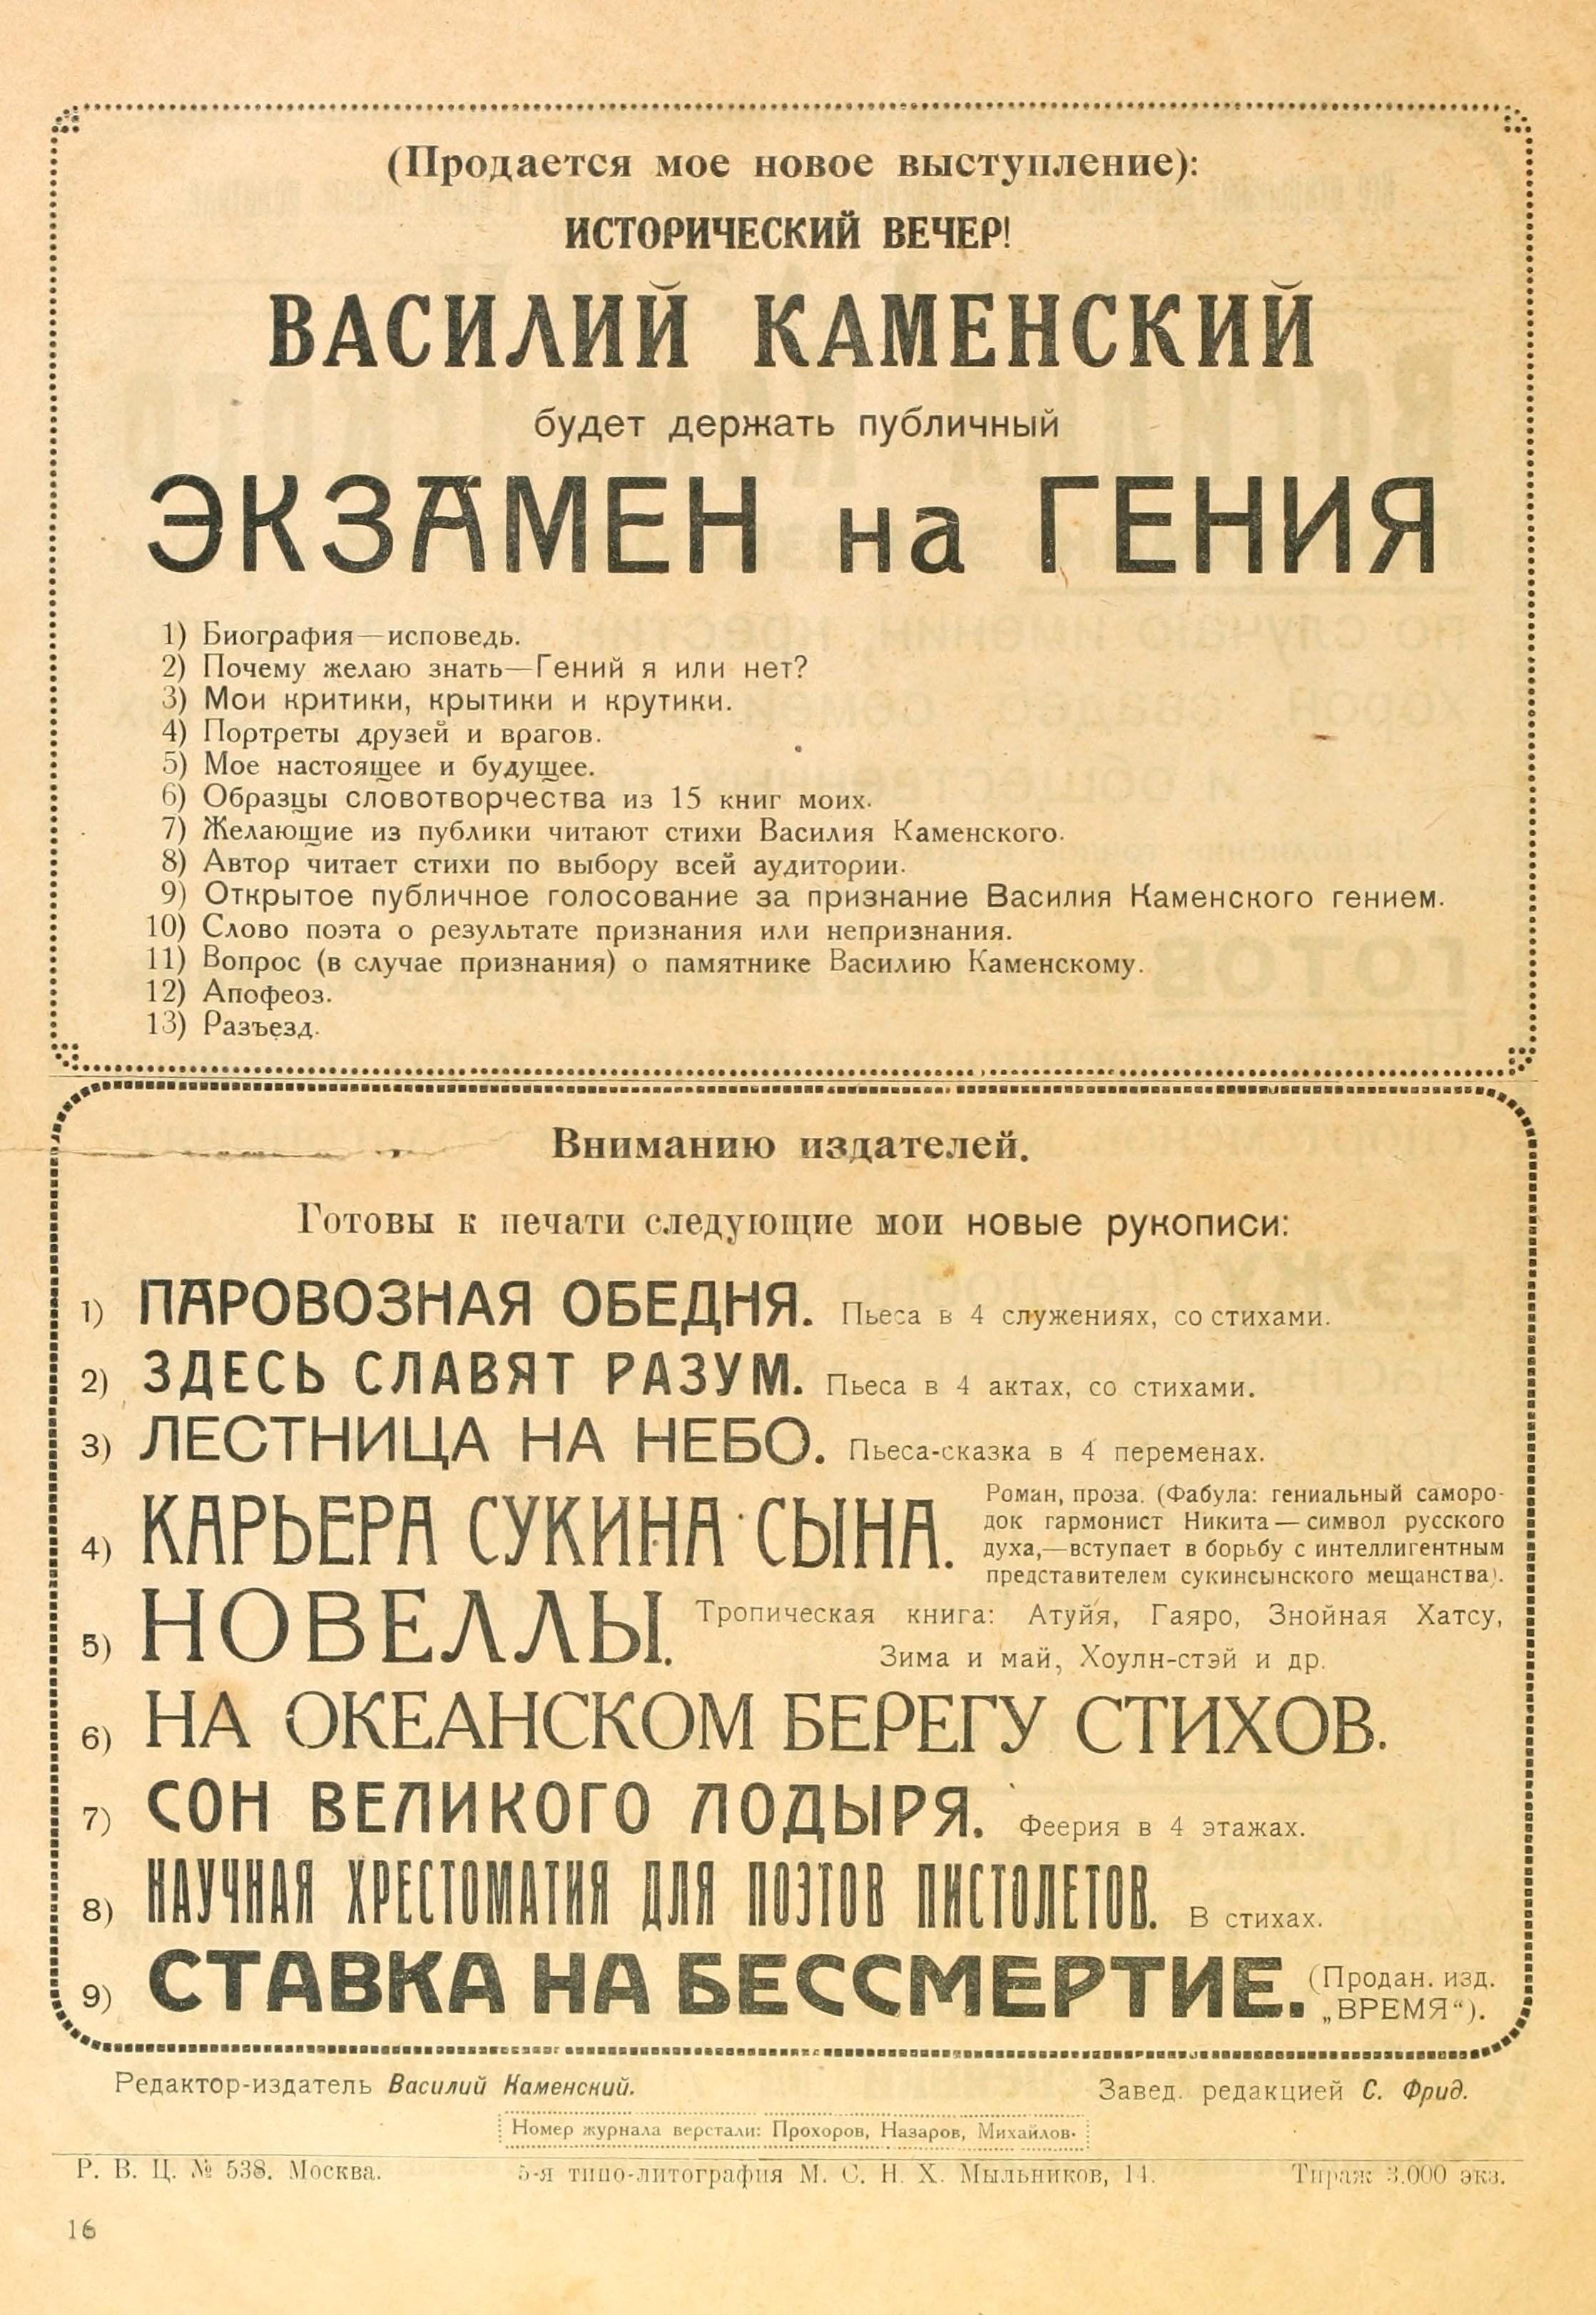 Мой журнал Василия Каменского : № 1. — Москва : Издание Василия Каменского, 1922